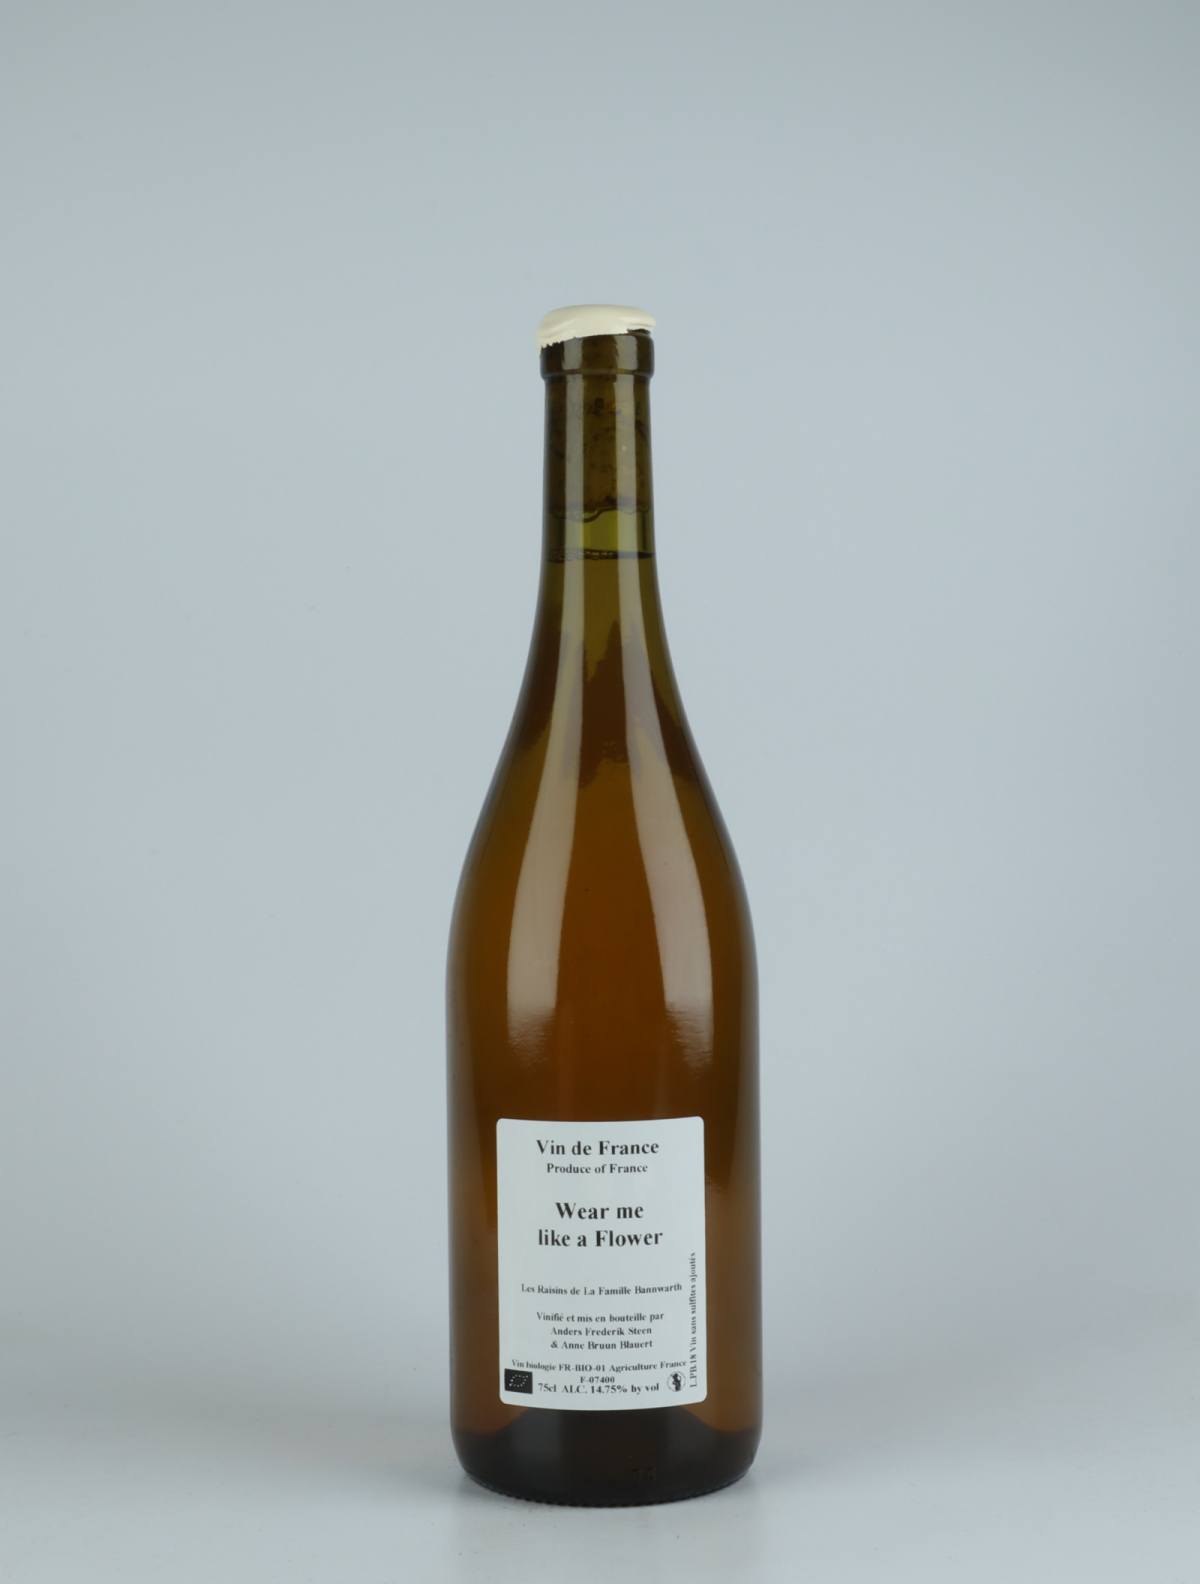 A bottle 2018 Wear me like a flower White wine from Anders Frederik Steen & Anne Bruun Blauert, Ardèche in France